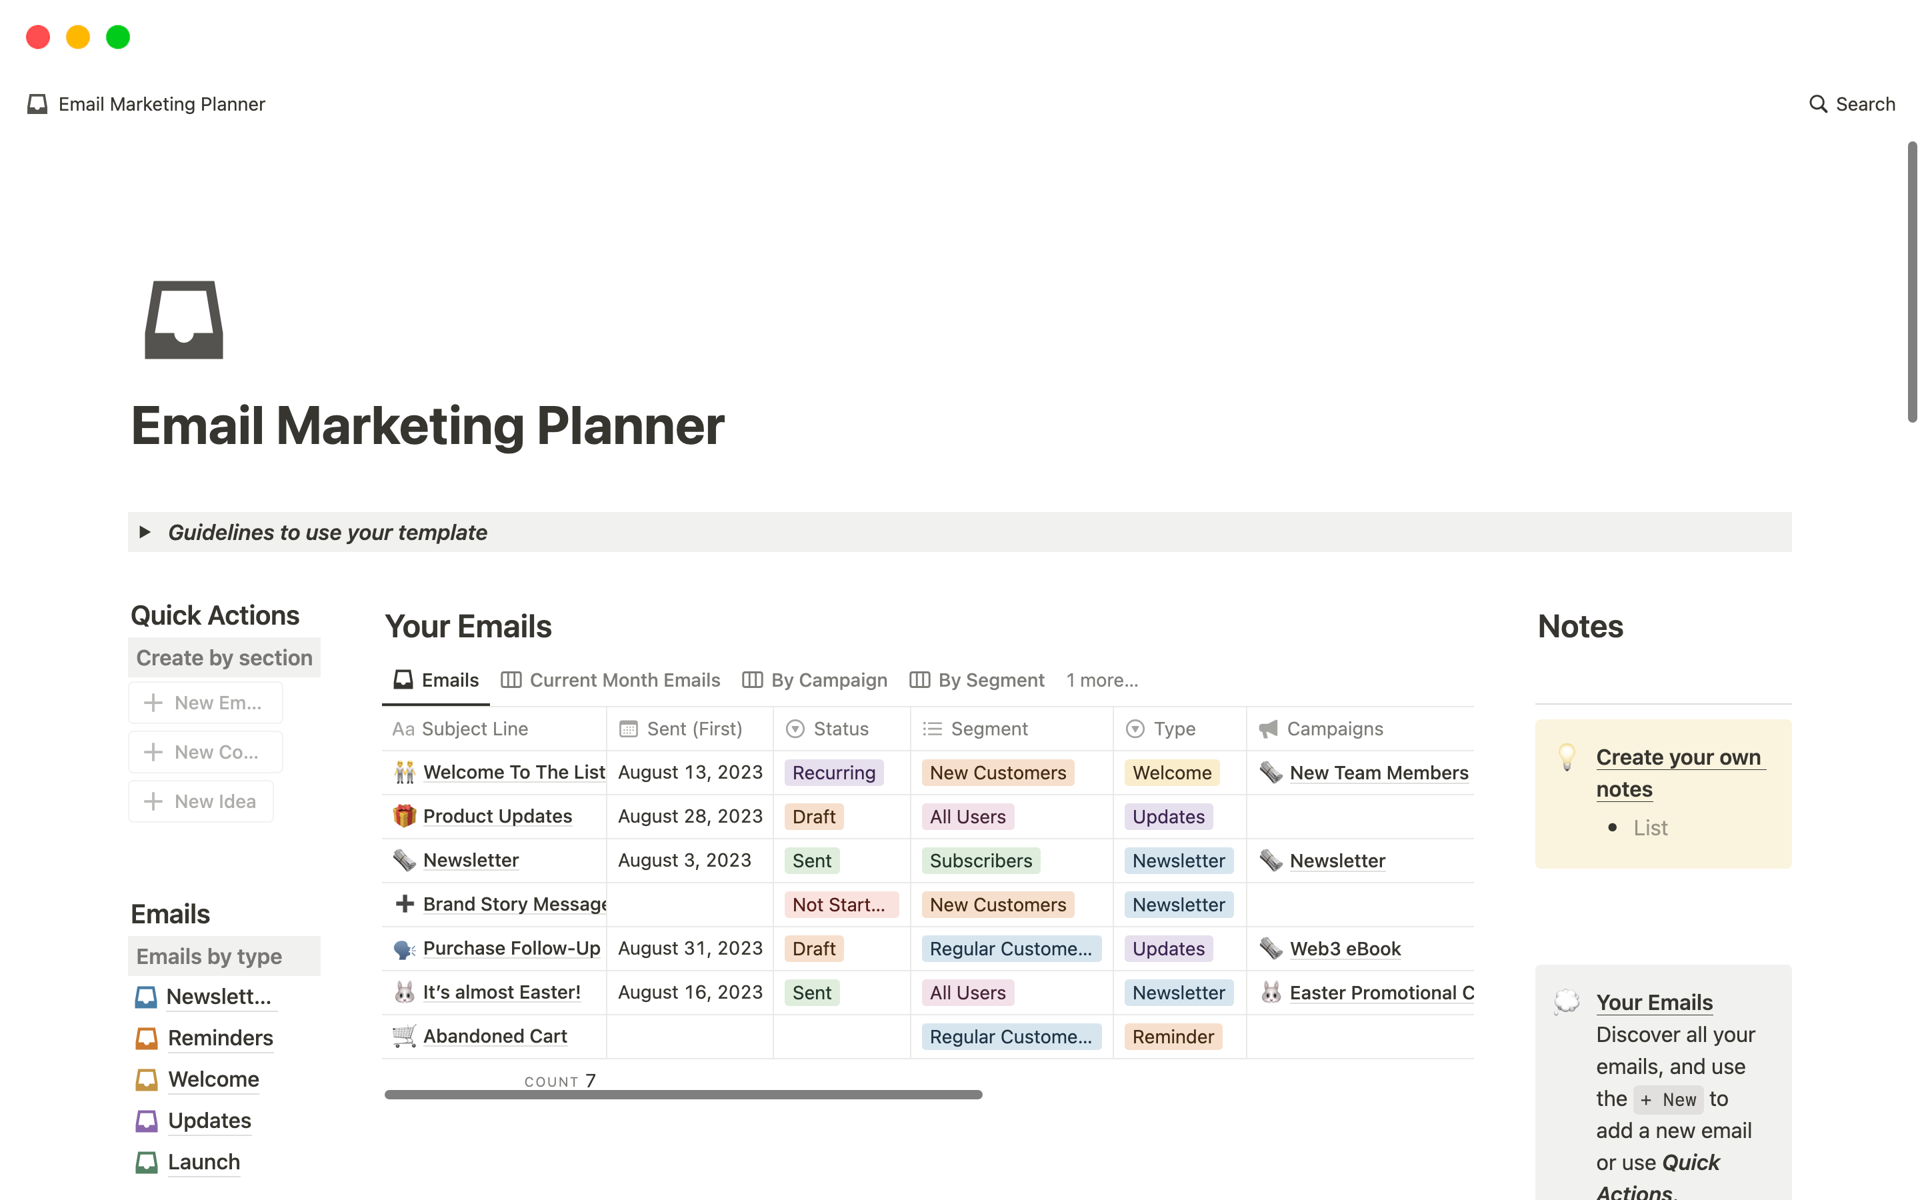 Vista previa de una plantilla para Email Marketing Planner